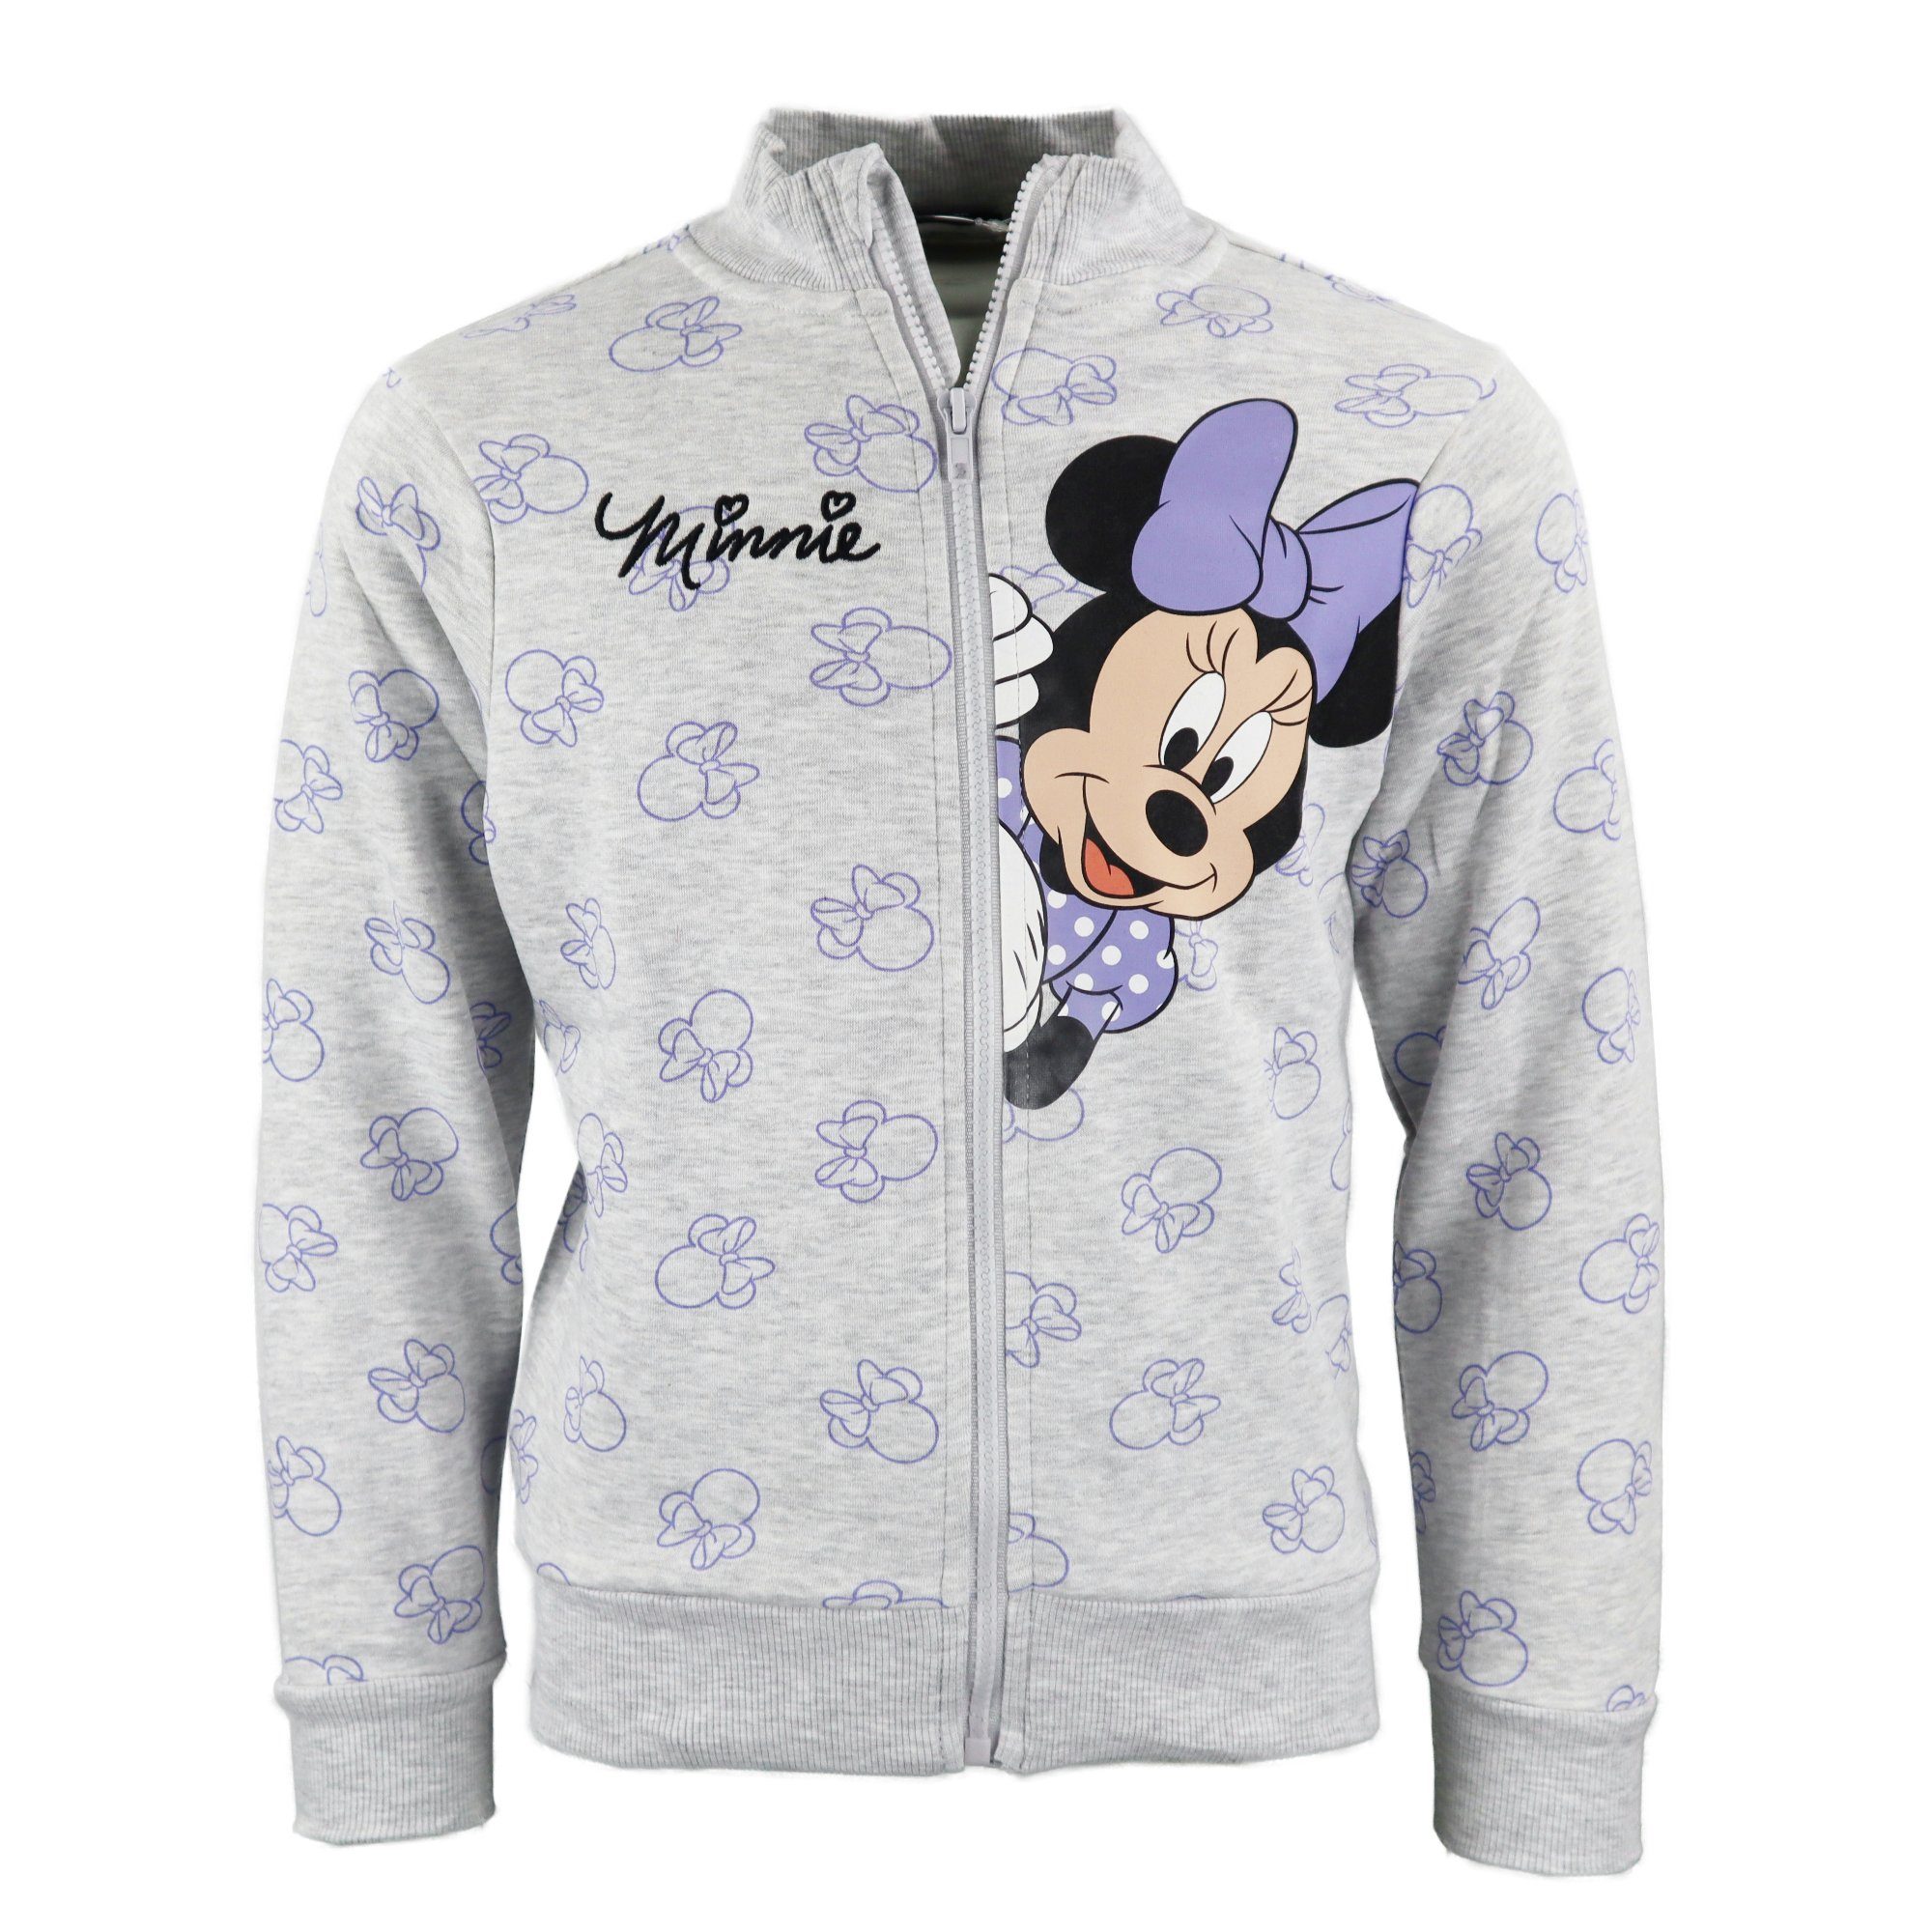 Disney Sweater Disney Minnie Maus Mädchen Kinder Reißverschluss Pullover Pulli Gr. 98-128